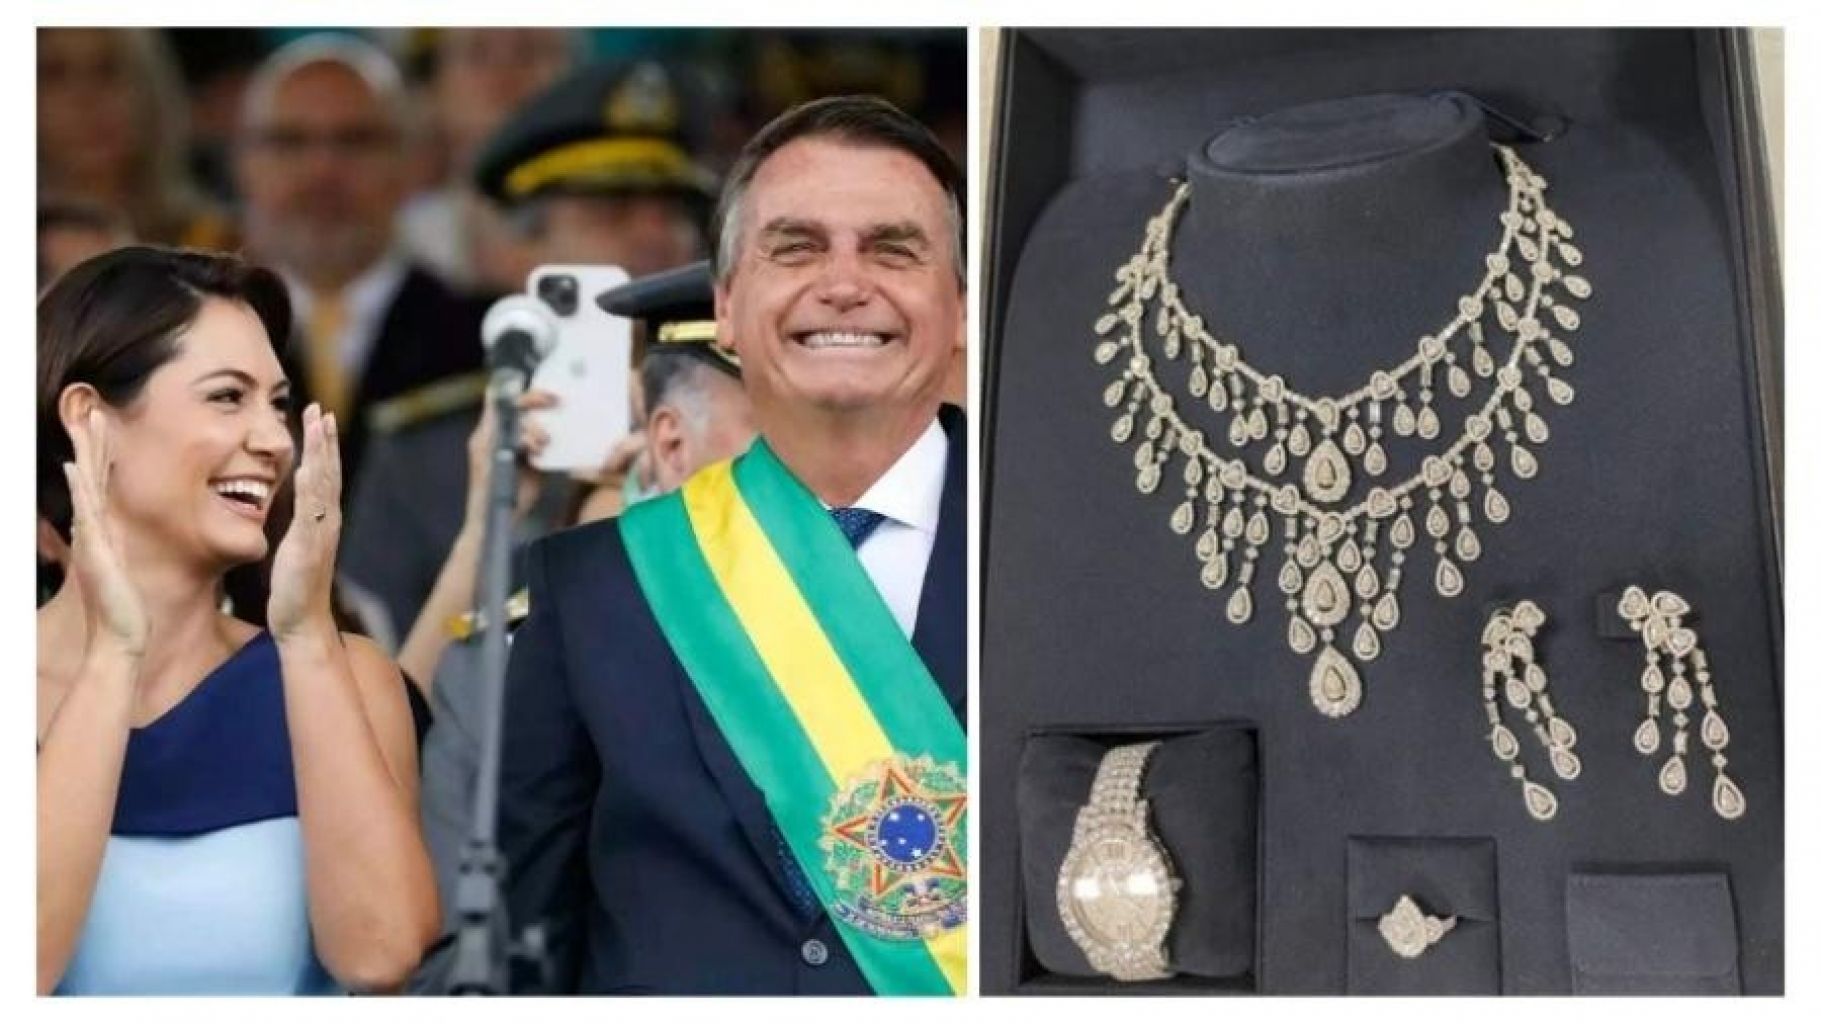 Opinião: Bolsonaro lutava por joias enquanto golpistas lutavam por ele após derrota